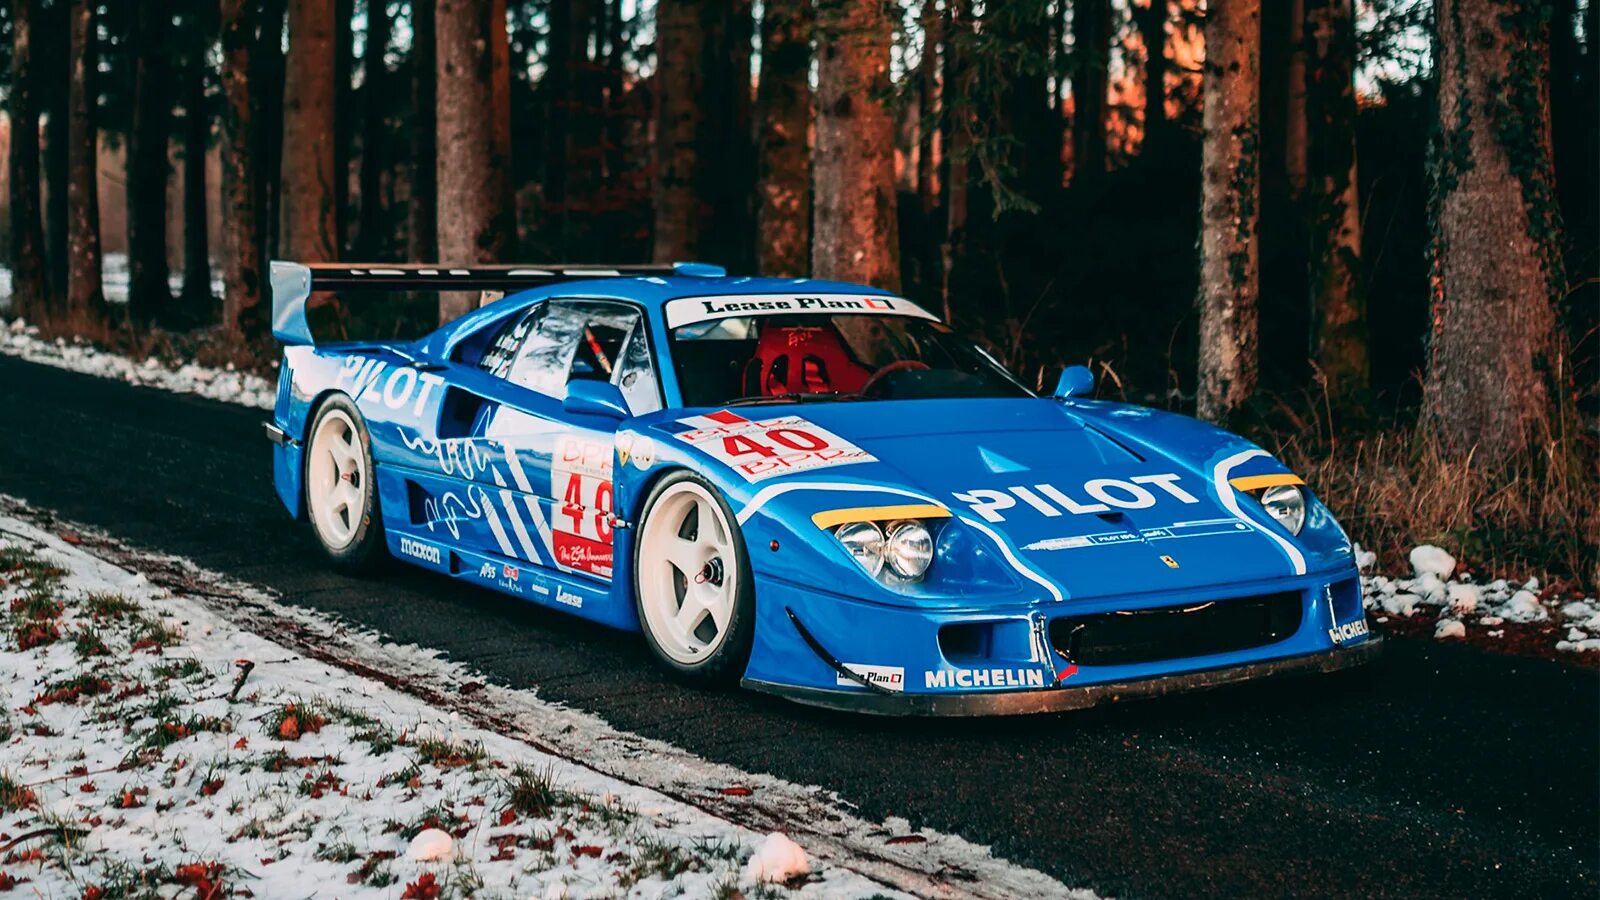 18 f lm. Ferrari f40 LM. Феррари ф40 LM. Ferrari f40 GTE. 1989 Ferrari f40 LM.